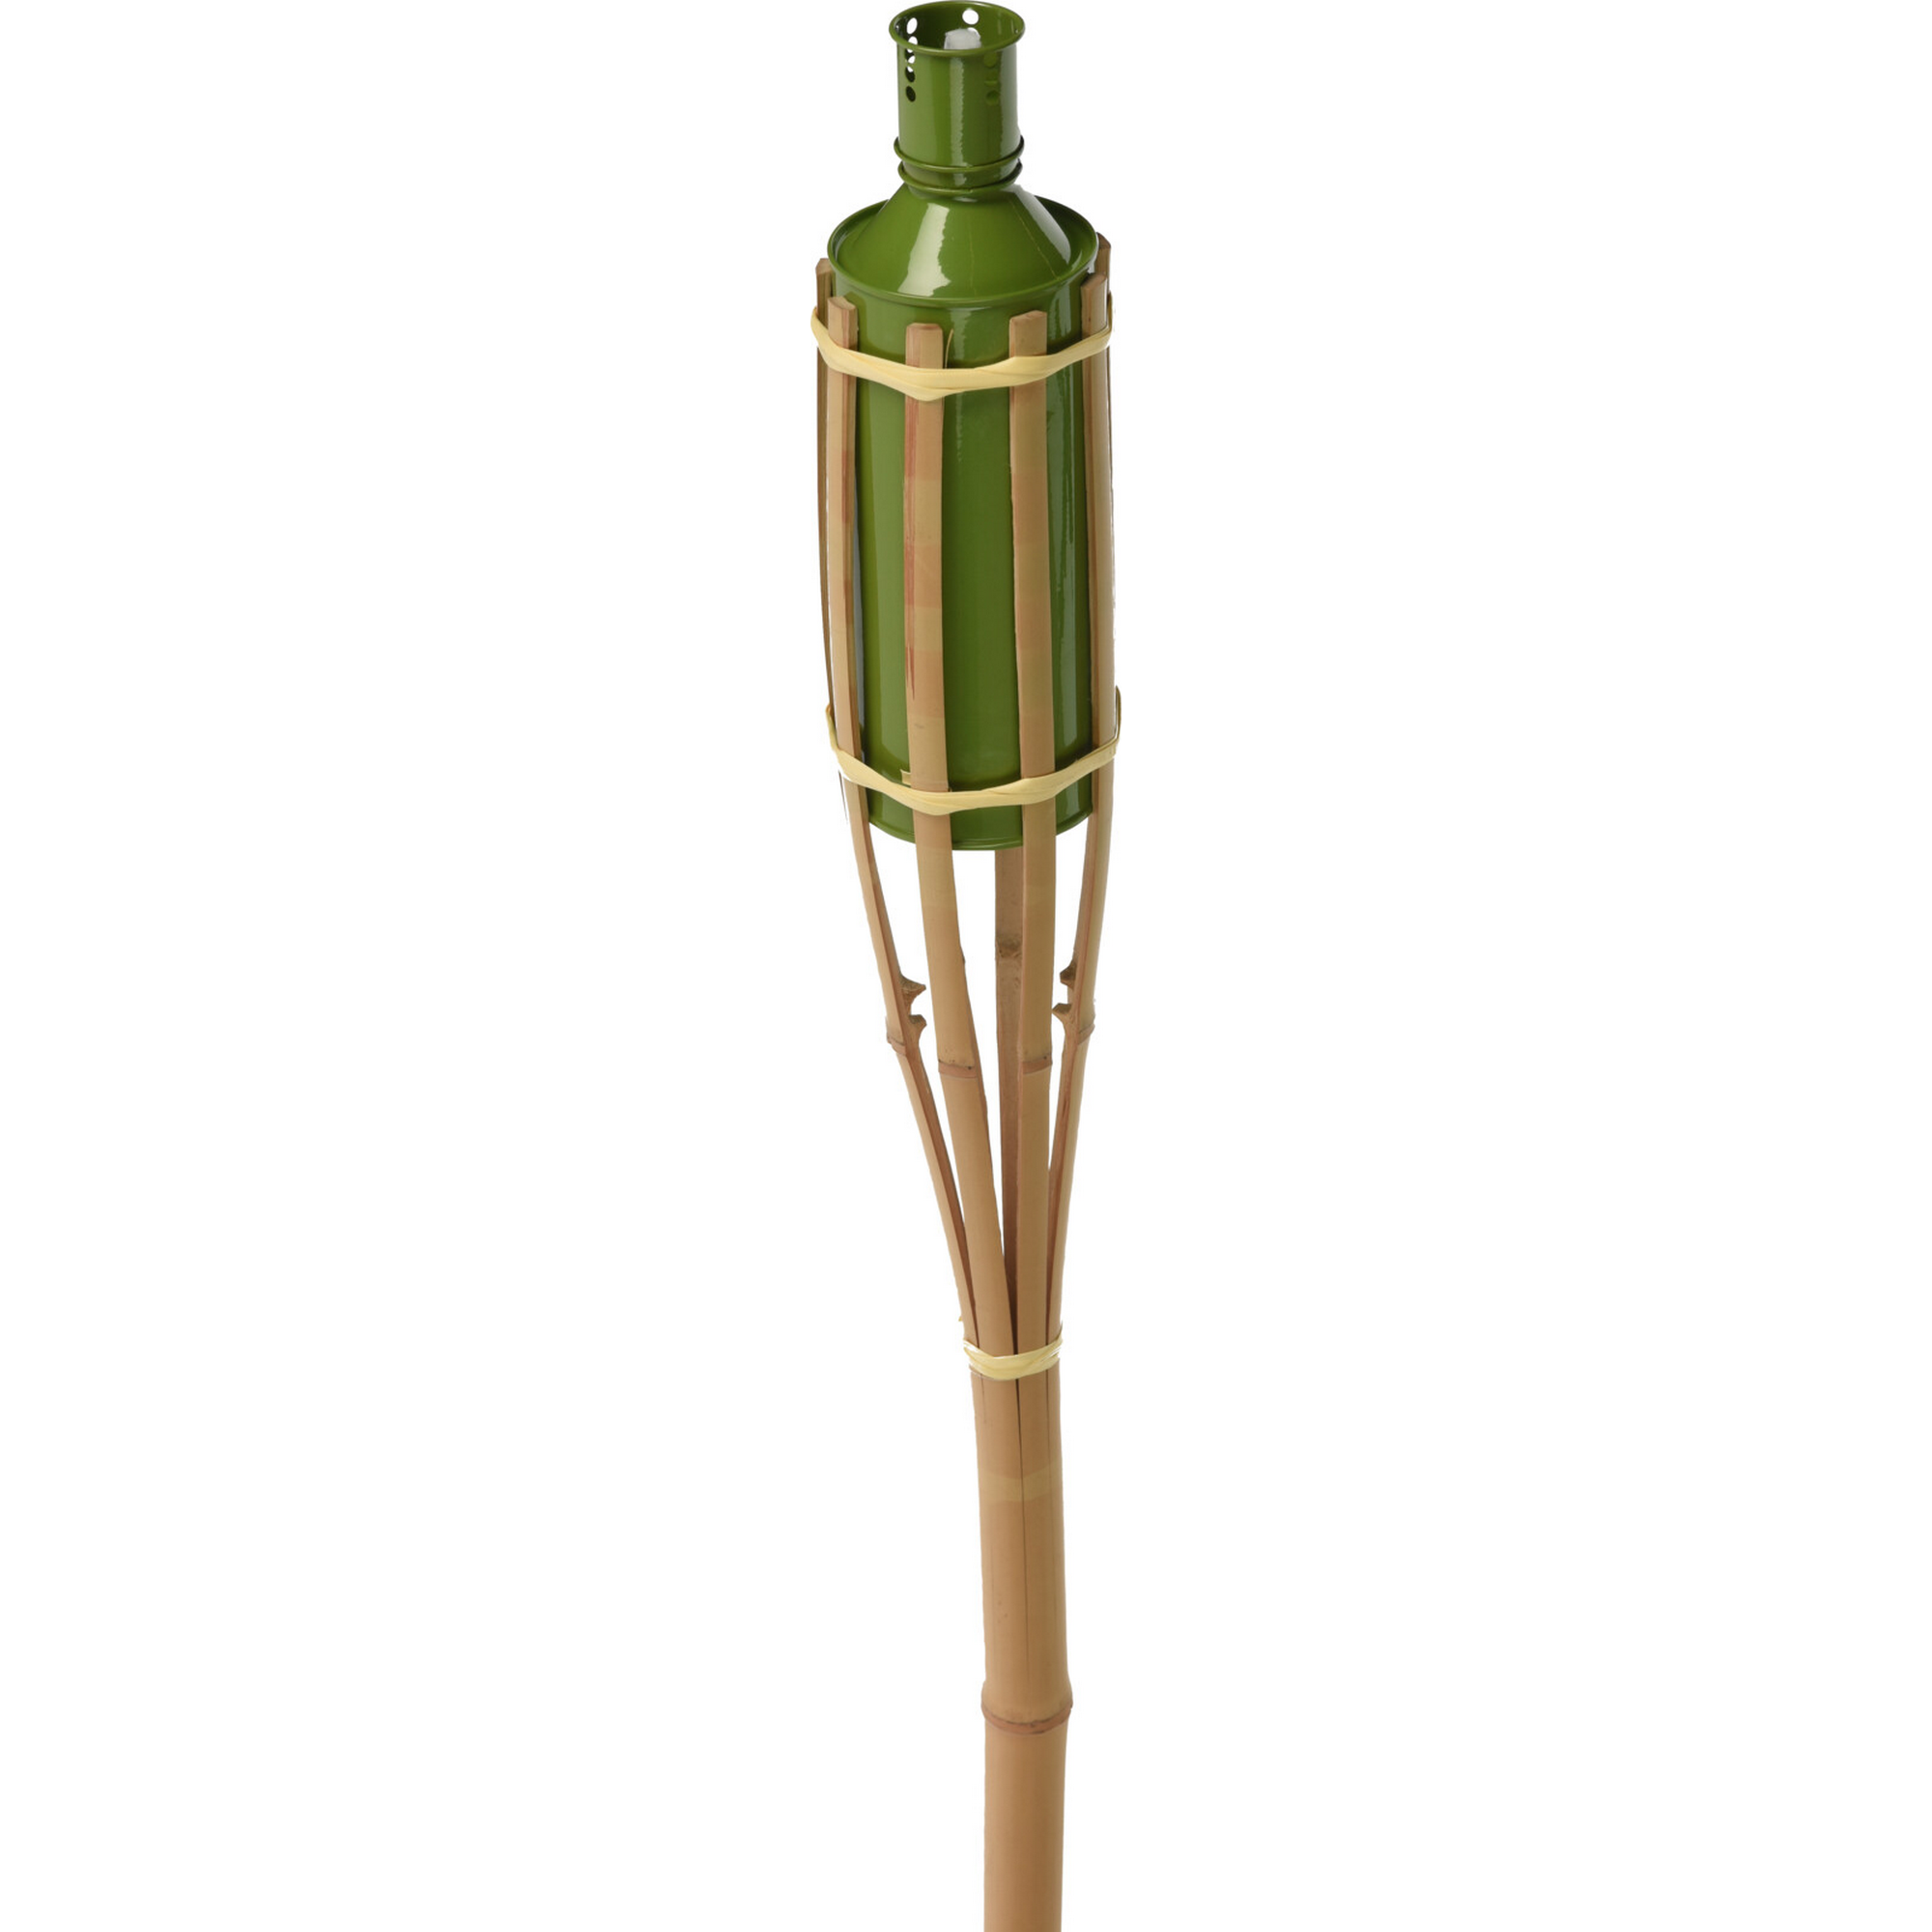 Gartenfackel Bambus 150 cm mit 4 verschieden farbigen Ölbehältern + product picture